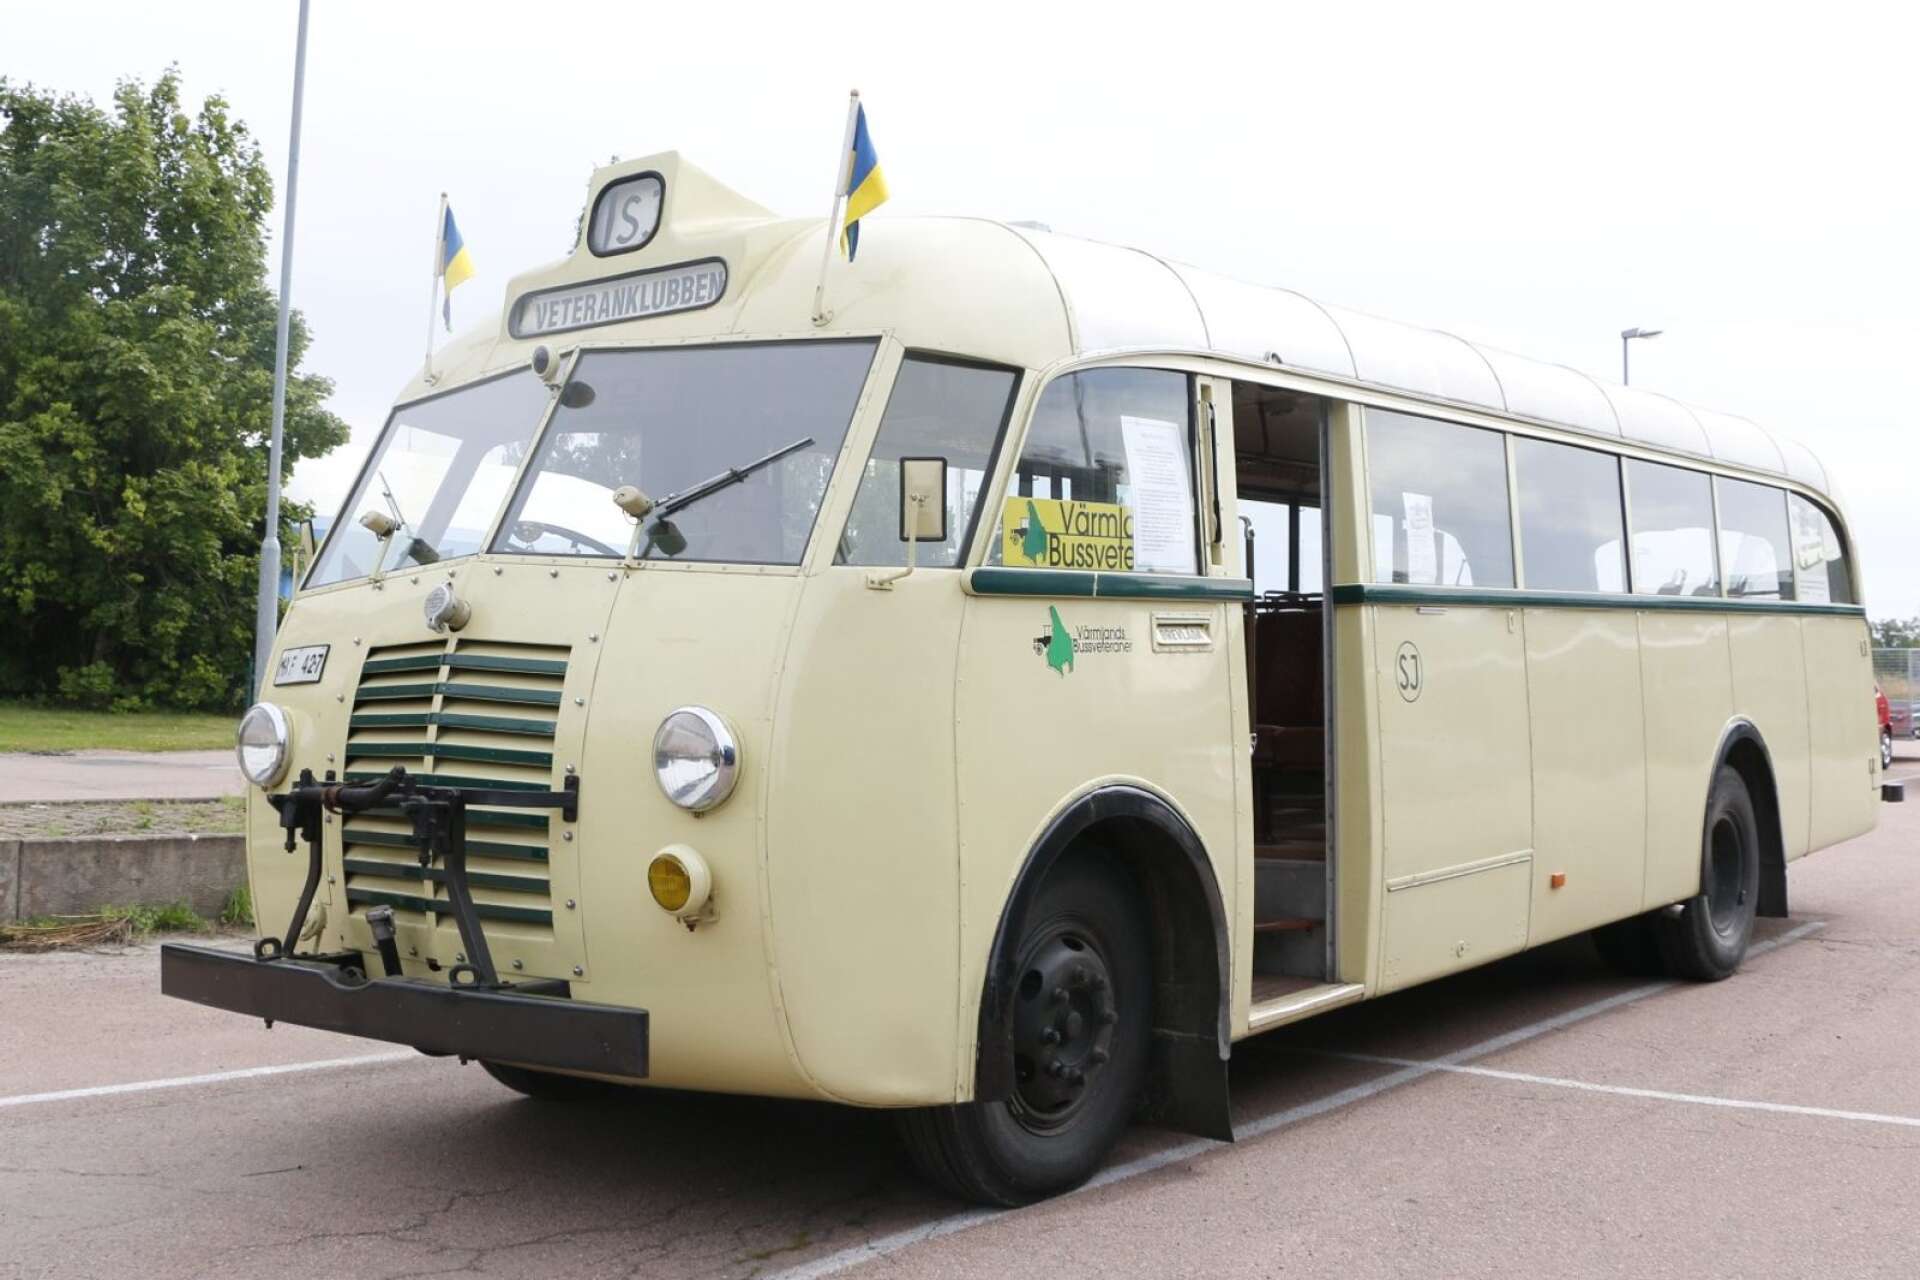 Volvobussen B 513 från 1948 har använts som en av de vita bussarna i filmen Eld och lågor (2019). 